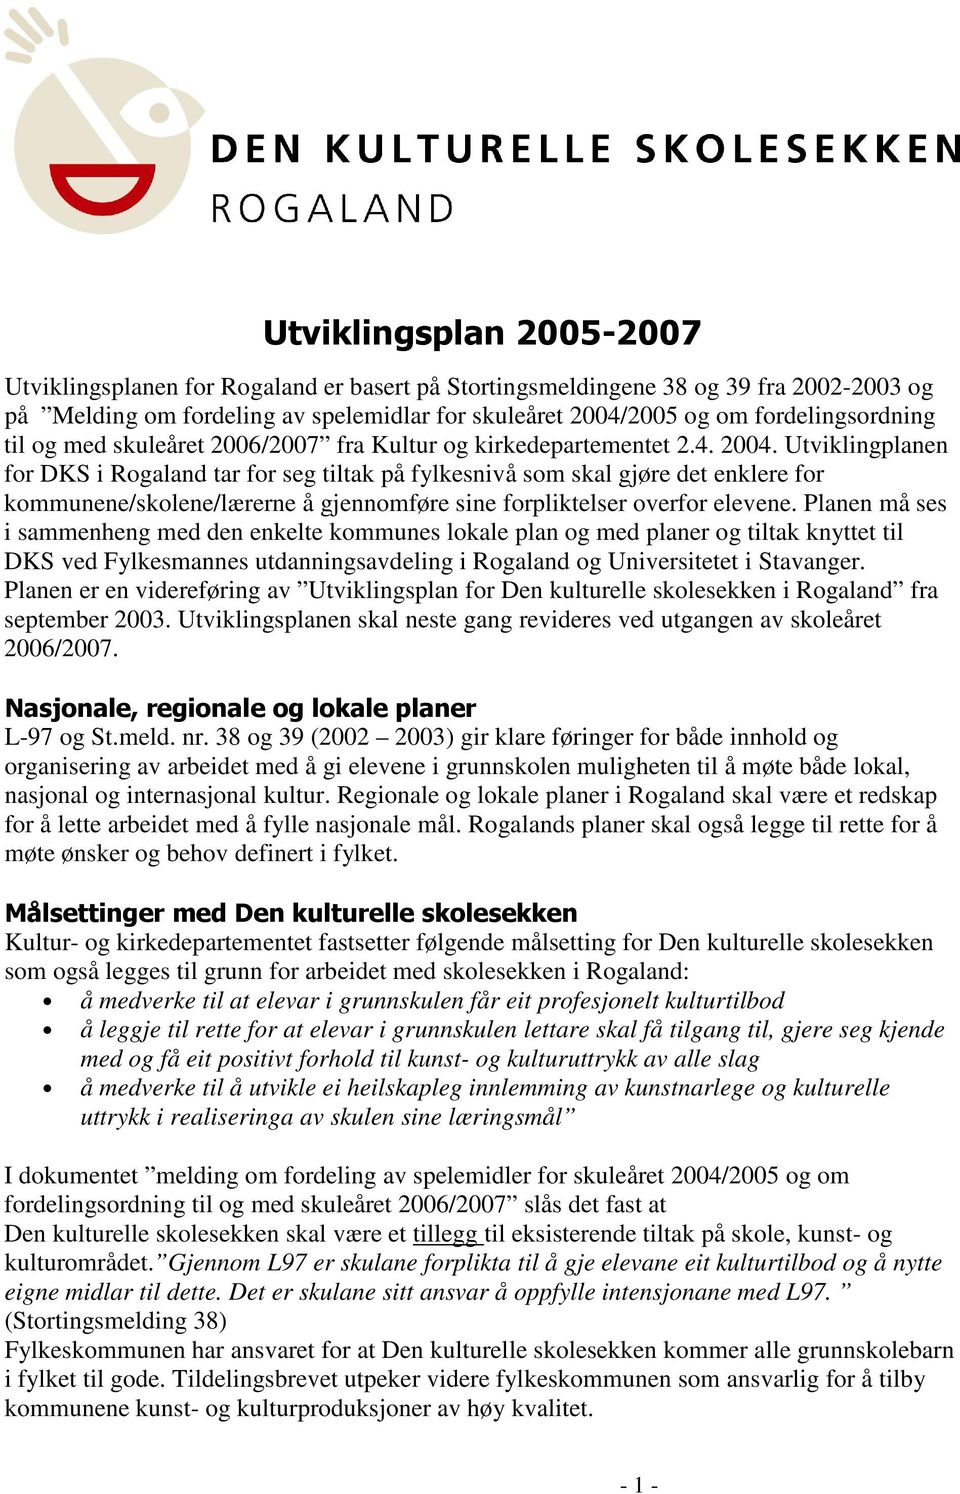 Utviklingplanen for DKS i Rogaland tar for seg tiltak på fylkesnivå som skal gjøre det enklere for kommunene/skolene/lærerne å gjennomføre sine forpliktelser overfor elevene.